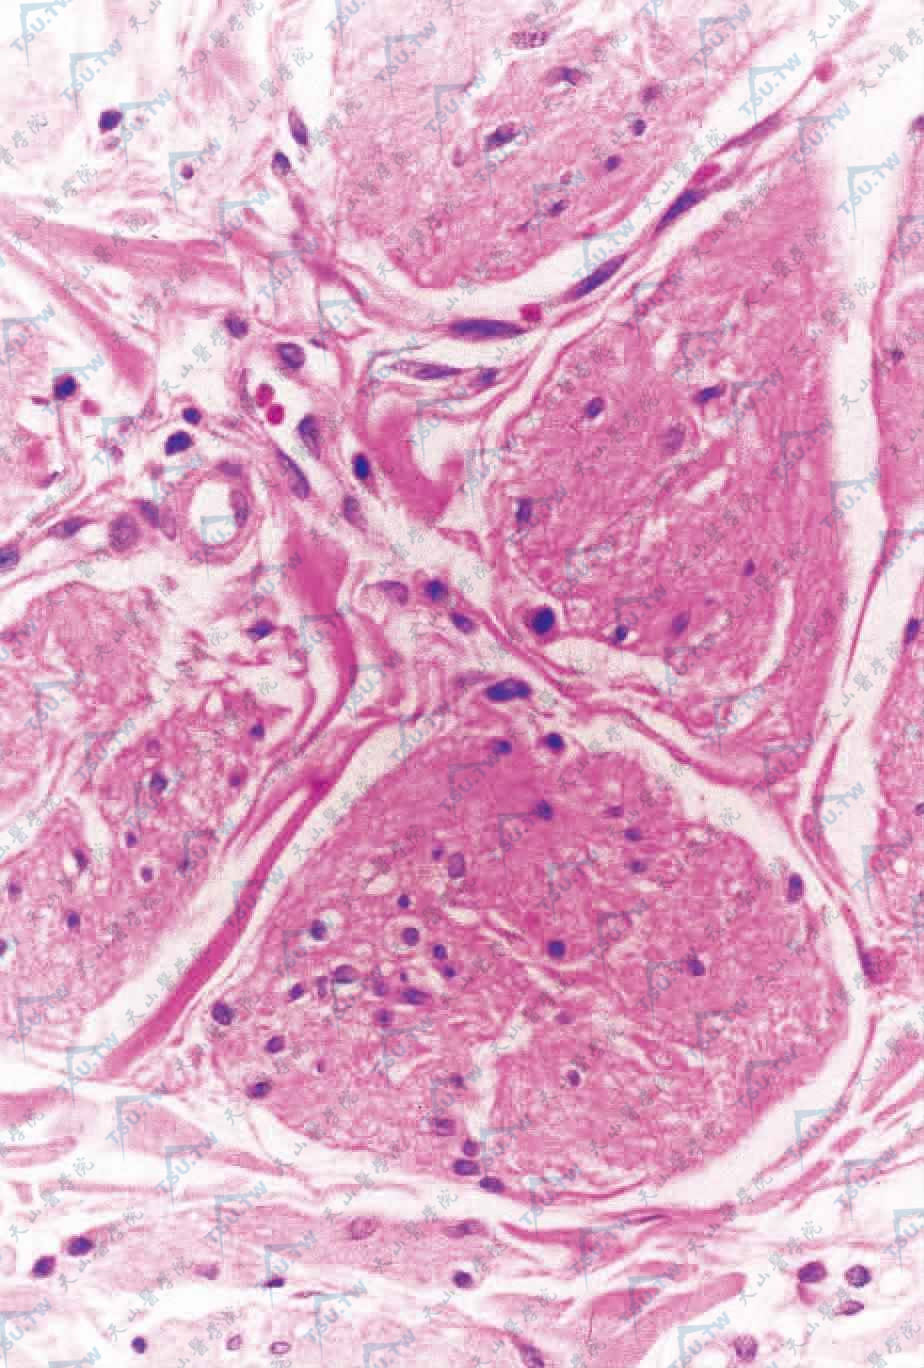 真皮网状层平滑肌细胞核周可见空泡（HE染色×400）